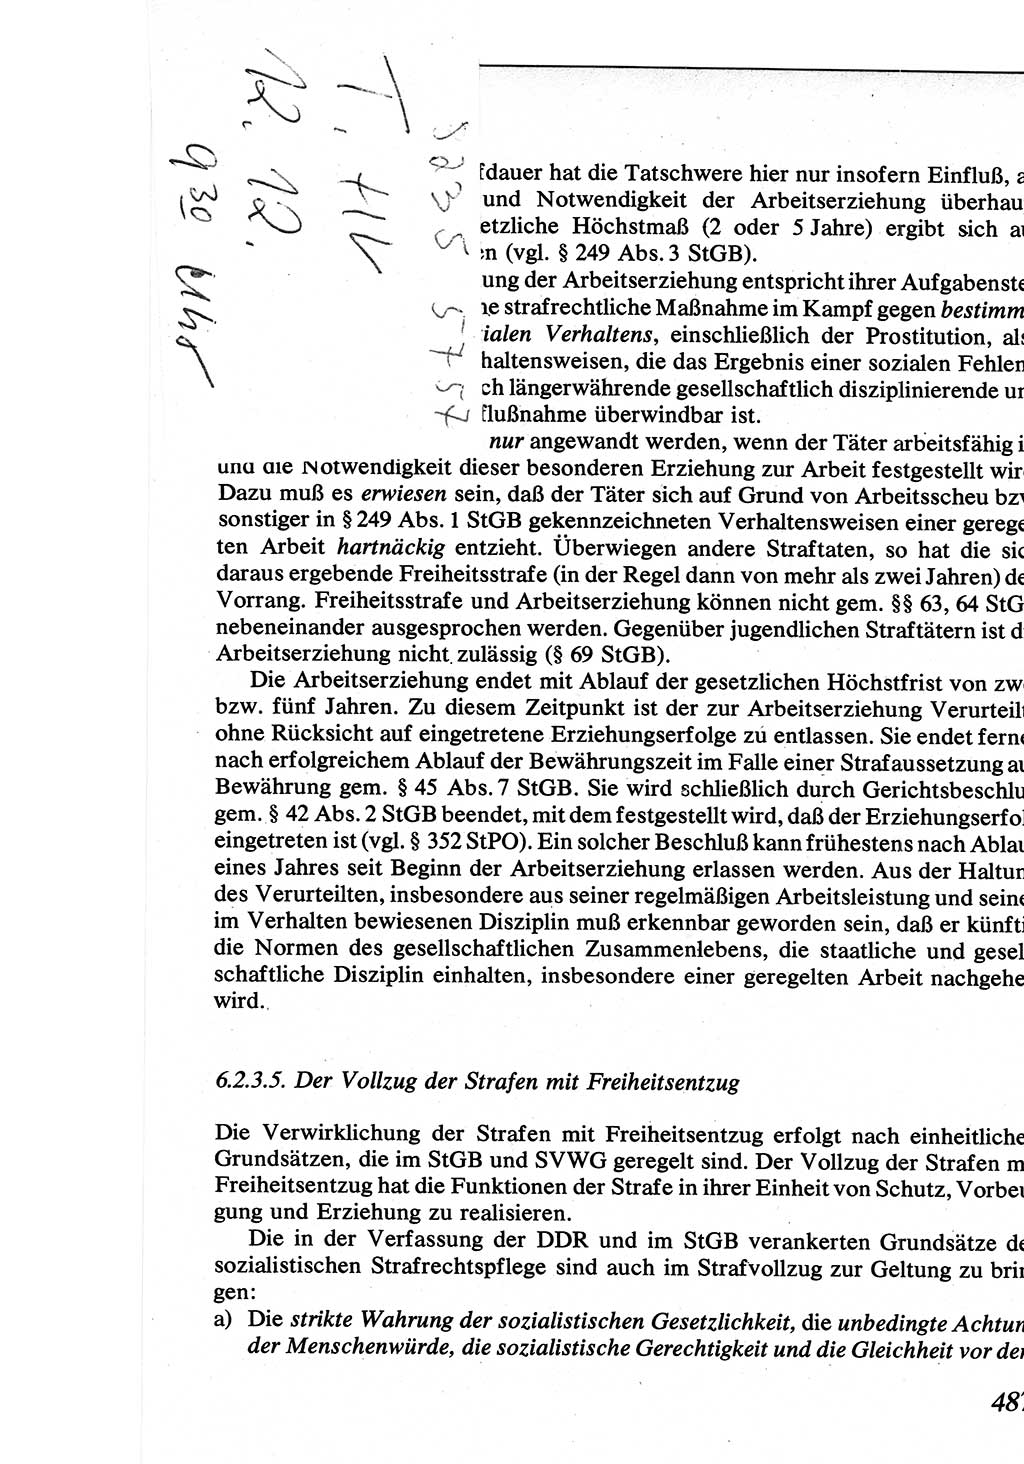 Strafrecht [Deutsche Demokratische Republik (DDR)], Allgemeiner Teil, Lehrbuch 1976, Seite 487 (Strafr. DDR AT Lb. 1976, S. 487)